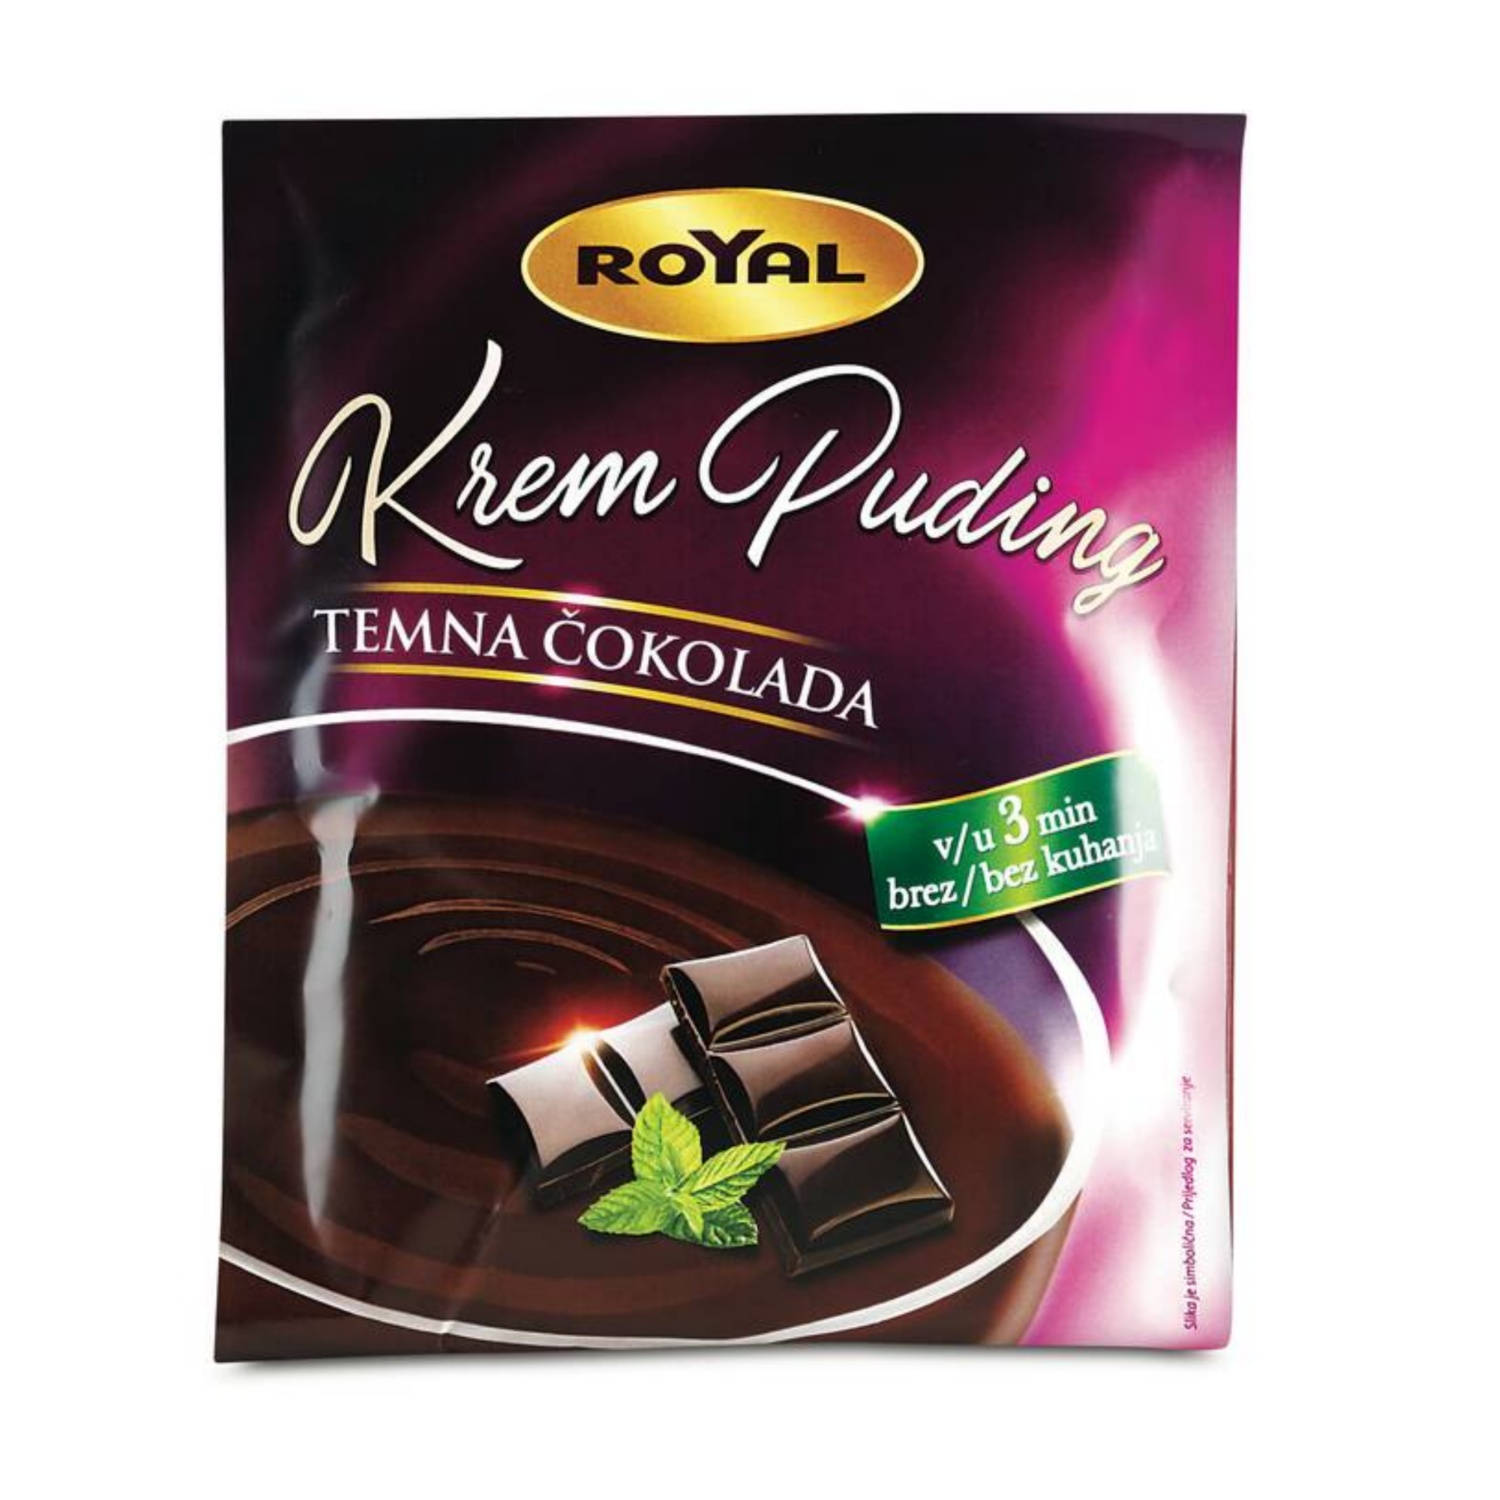 ROYAL Kremni puding brez kuhanja, temna čokolada